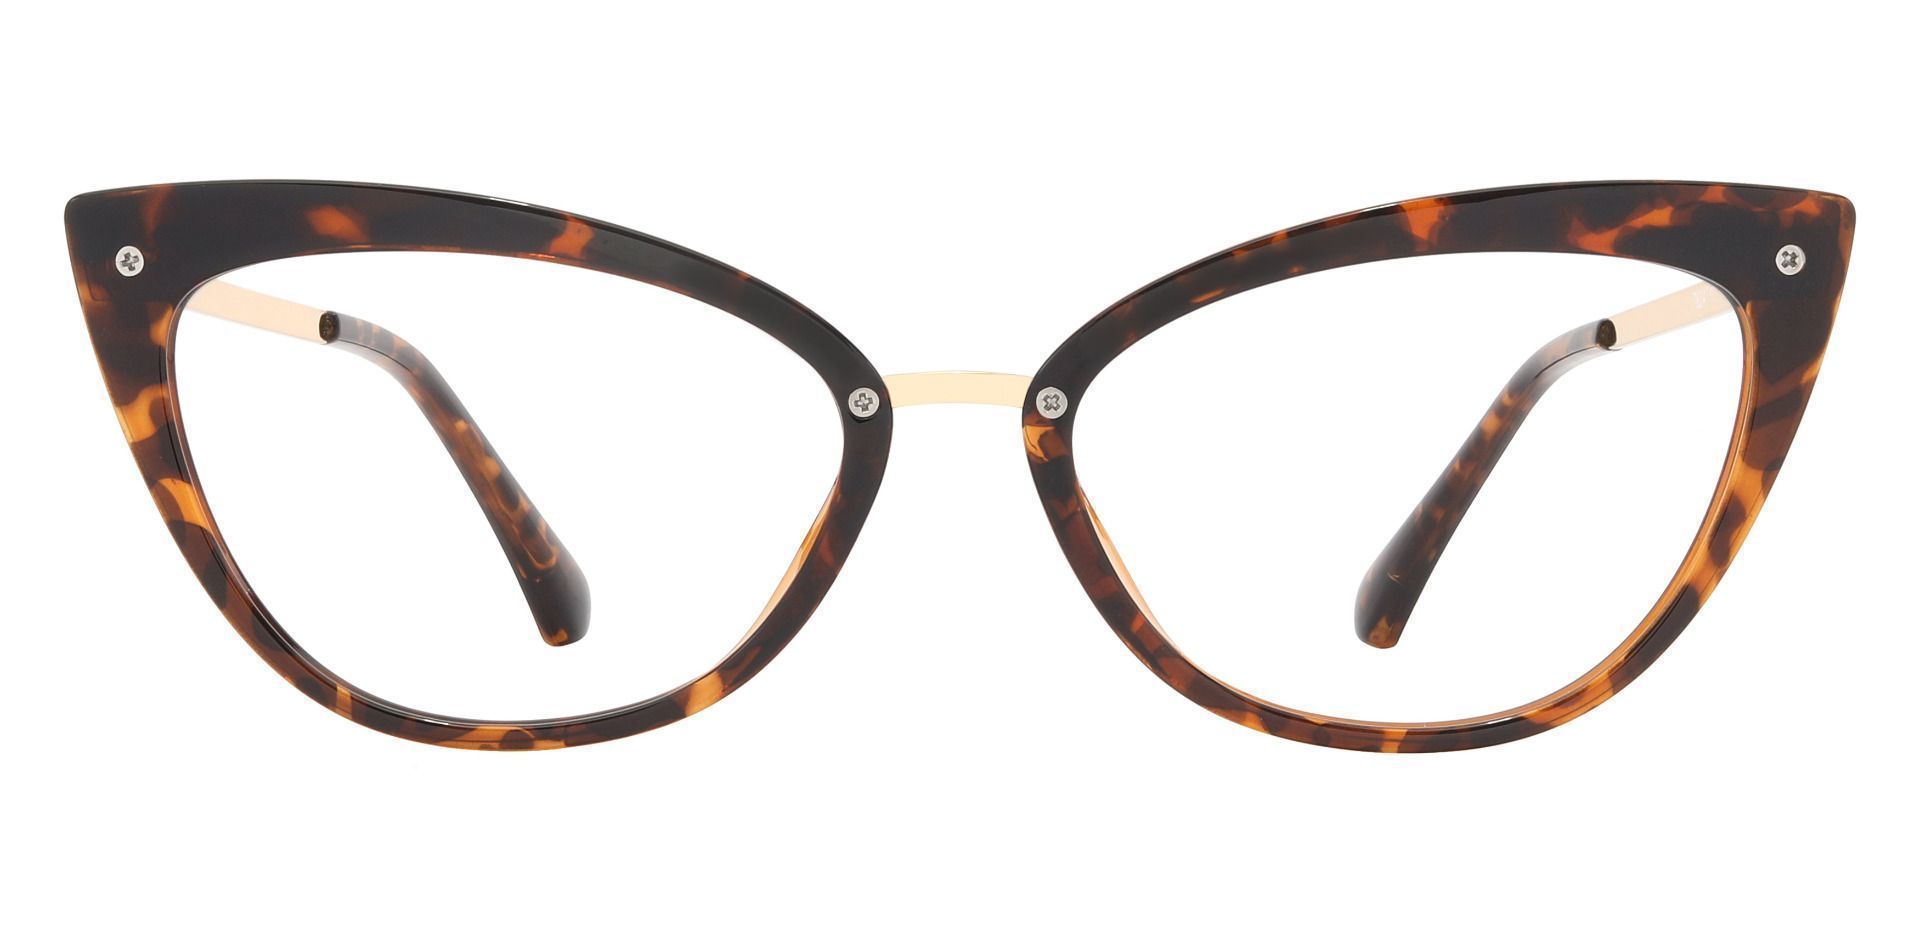 Glenda Cat Eye Prescription Glasses - Tortoise